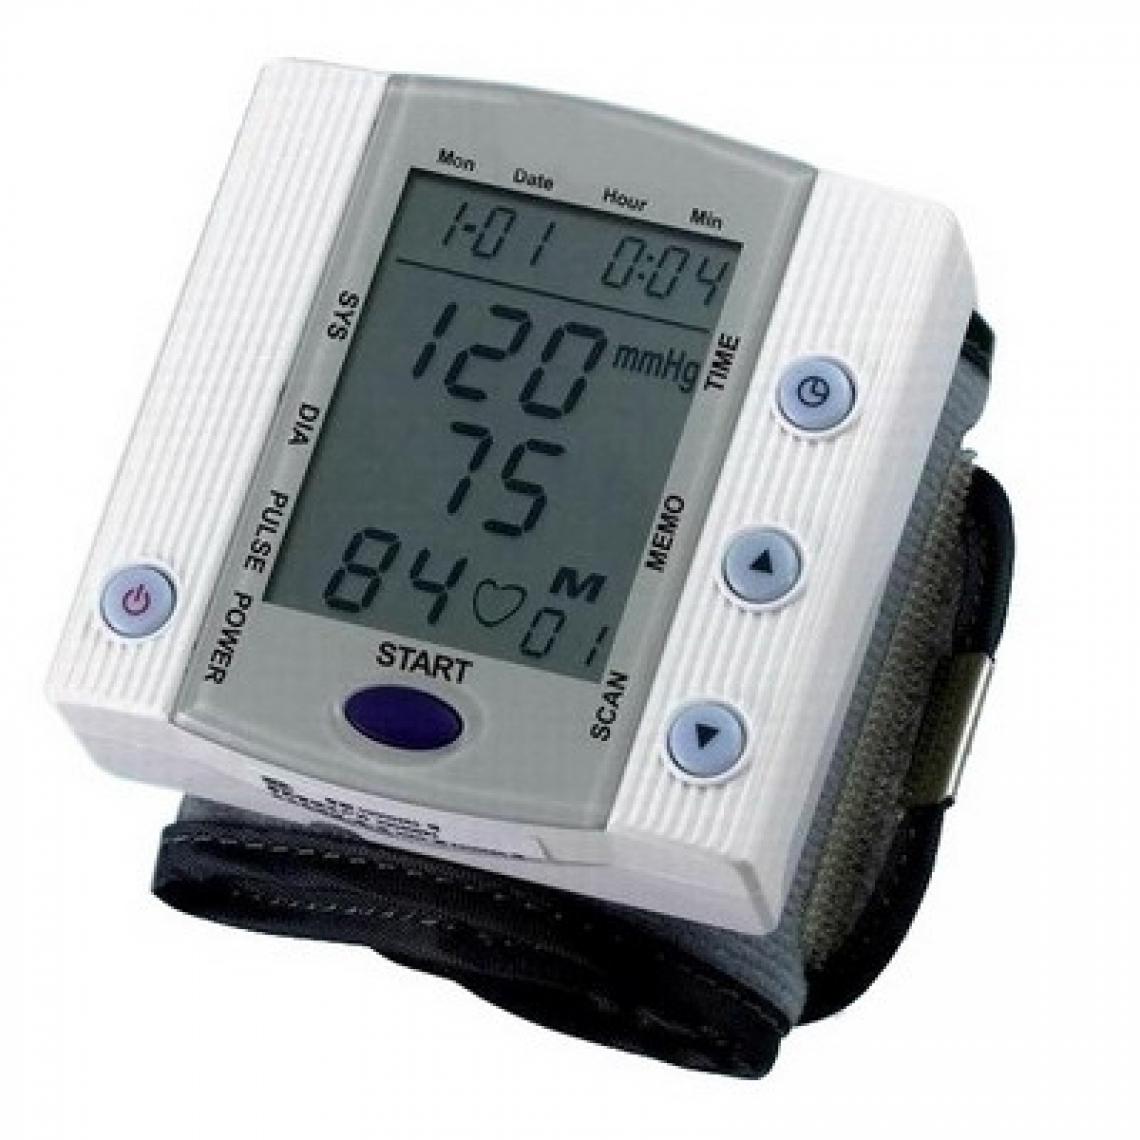 Wewoo - Tensiomètre Moniteur de tension artérielle de poignet complètement automatique calendrier de et horloge - Tensiomètre connecté